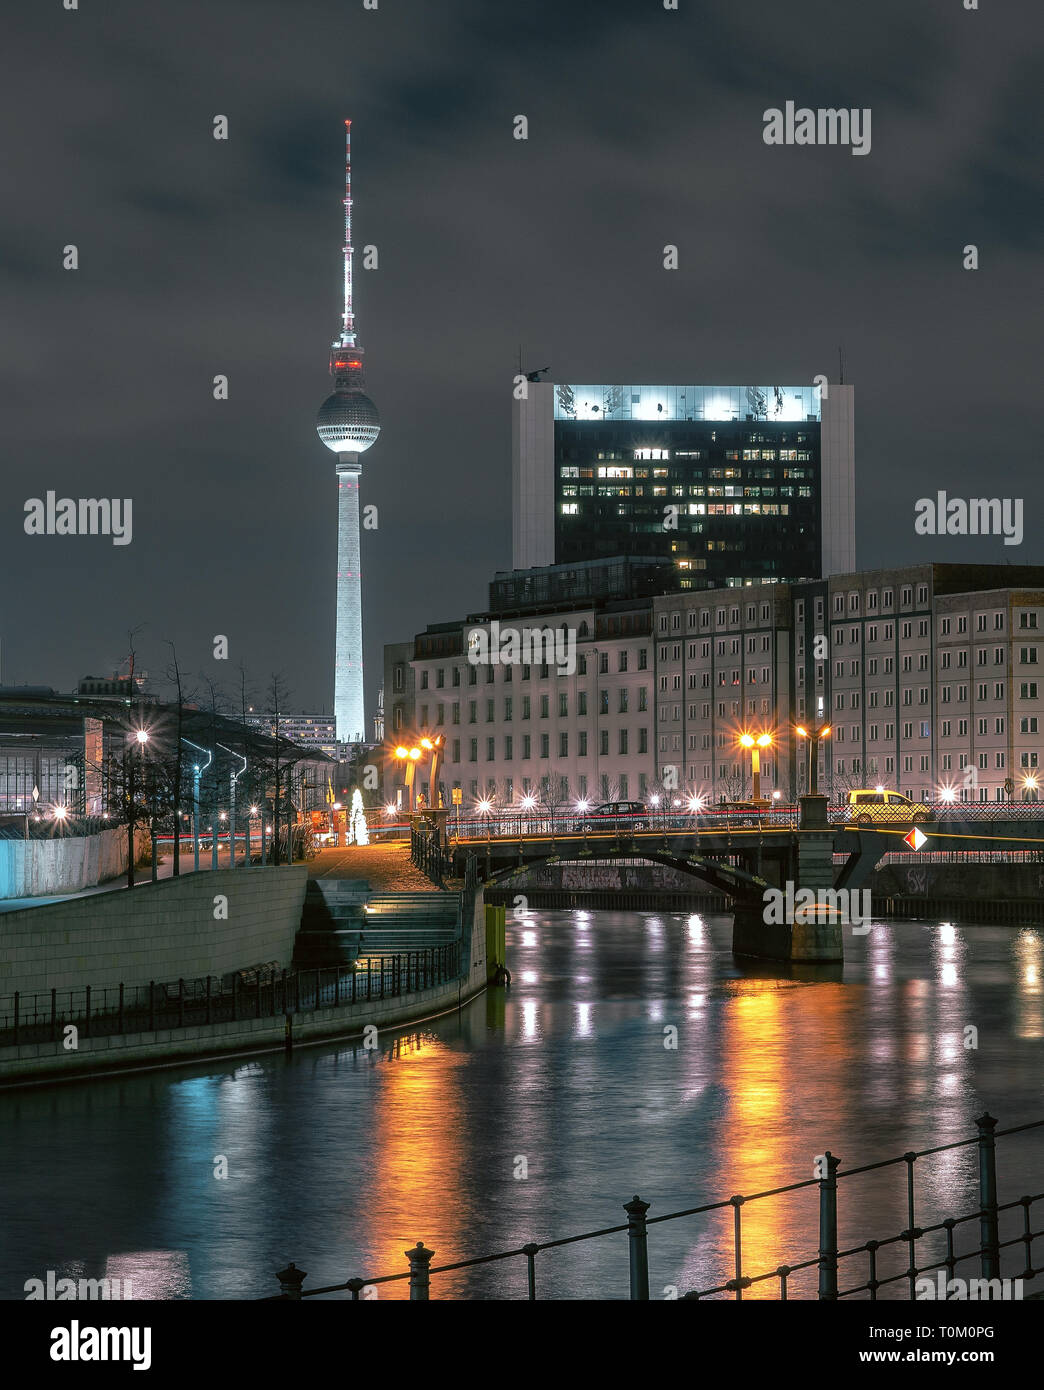 Berlin Ville de nuit avec de beaux néons dans un autre look futuriste Banque D'Images